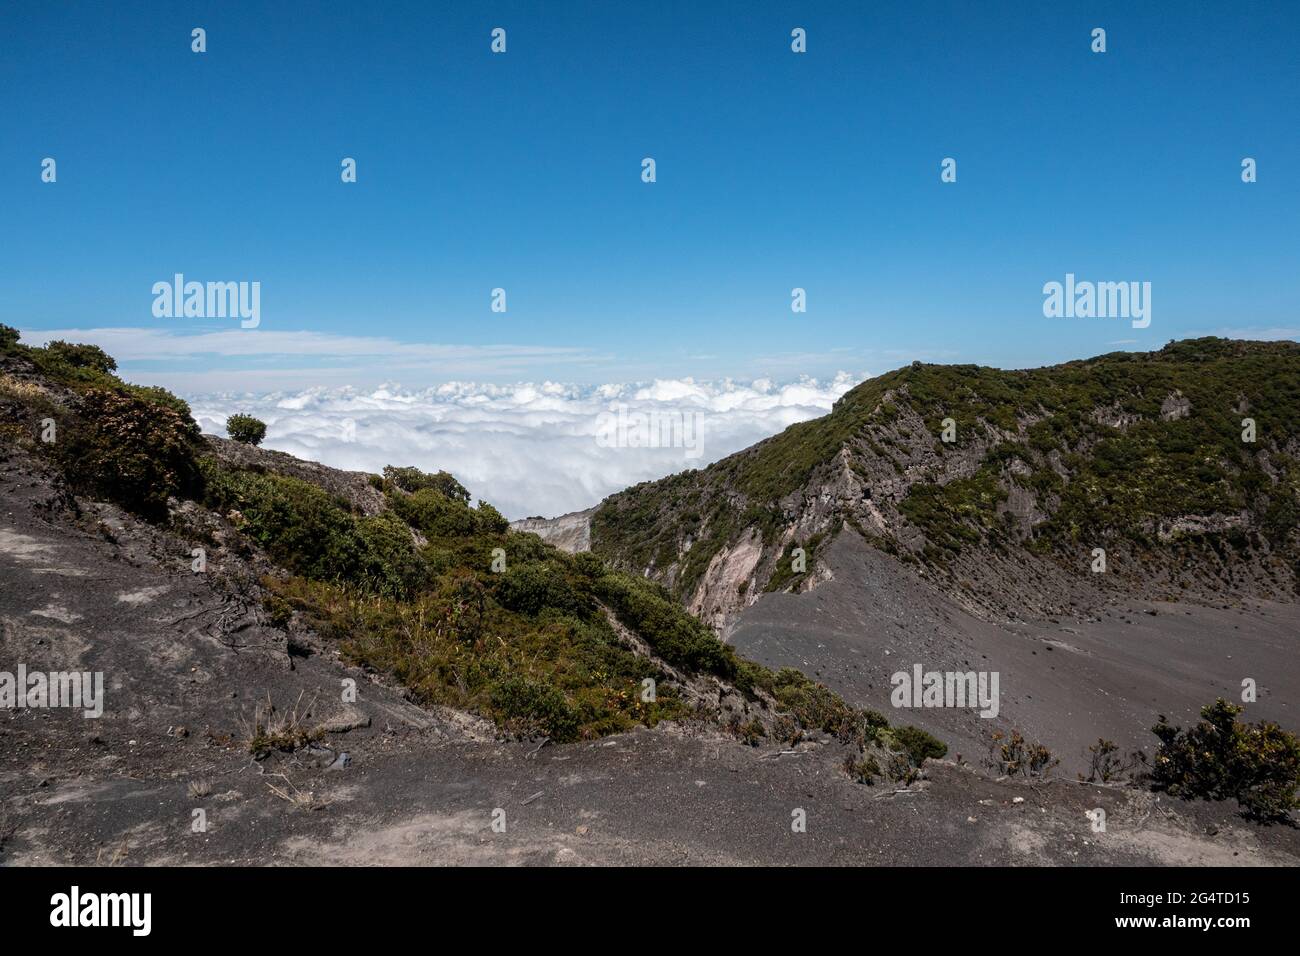 Costa Rica landscape Stock Photo